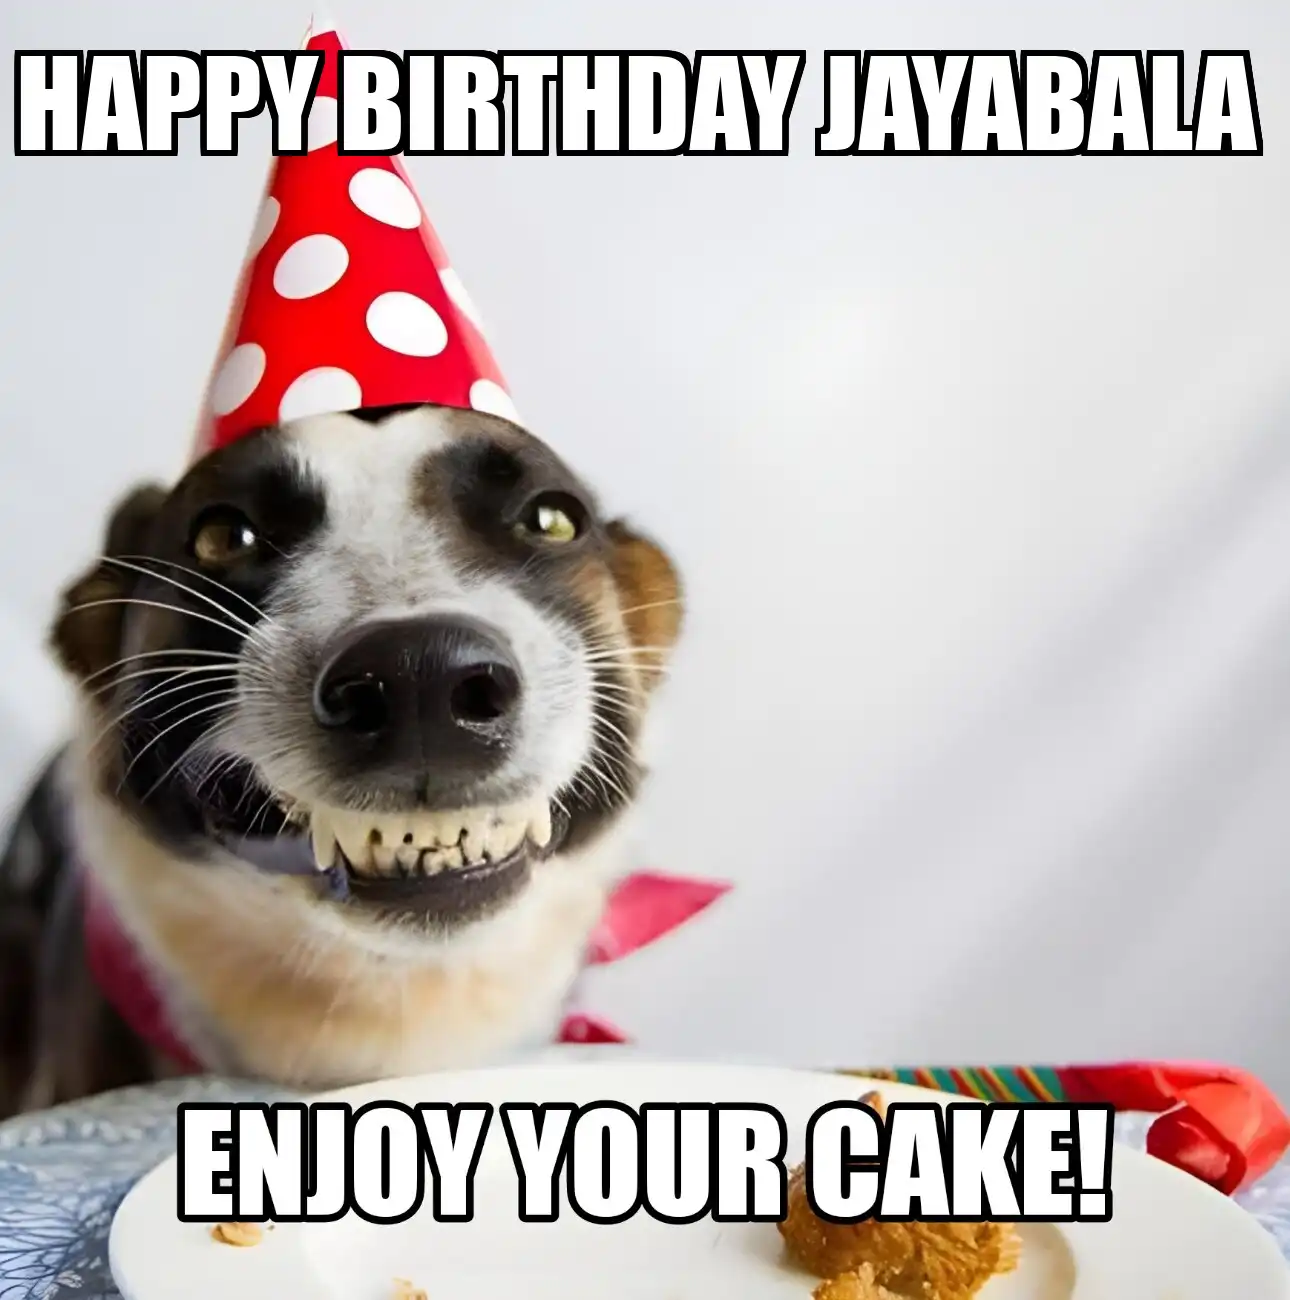 Happy Birthday Jayabala Enjoy Your Cake Dog Meme